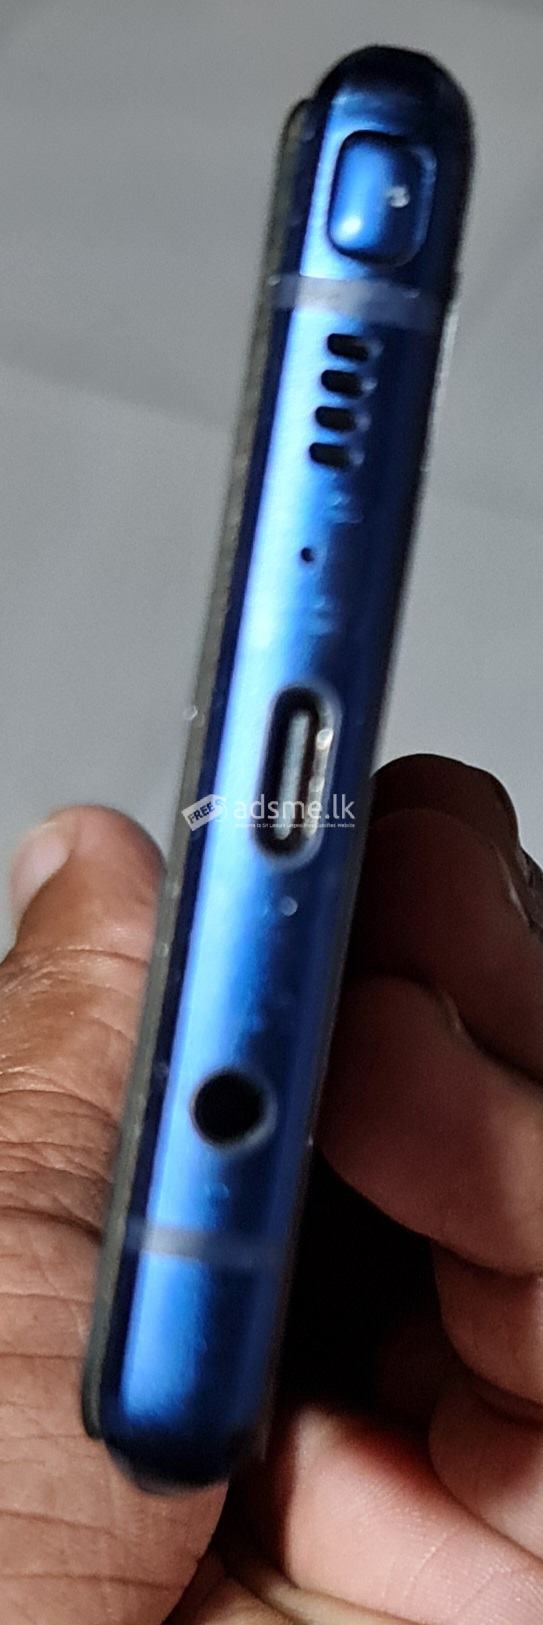 Samsung Galaxy Note 9 SM-N960F 128GB ocea blue (Used)